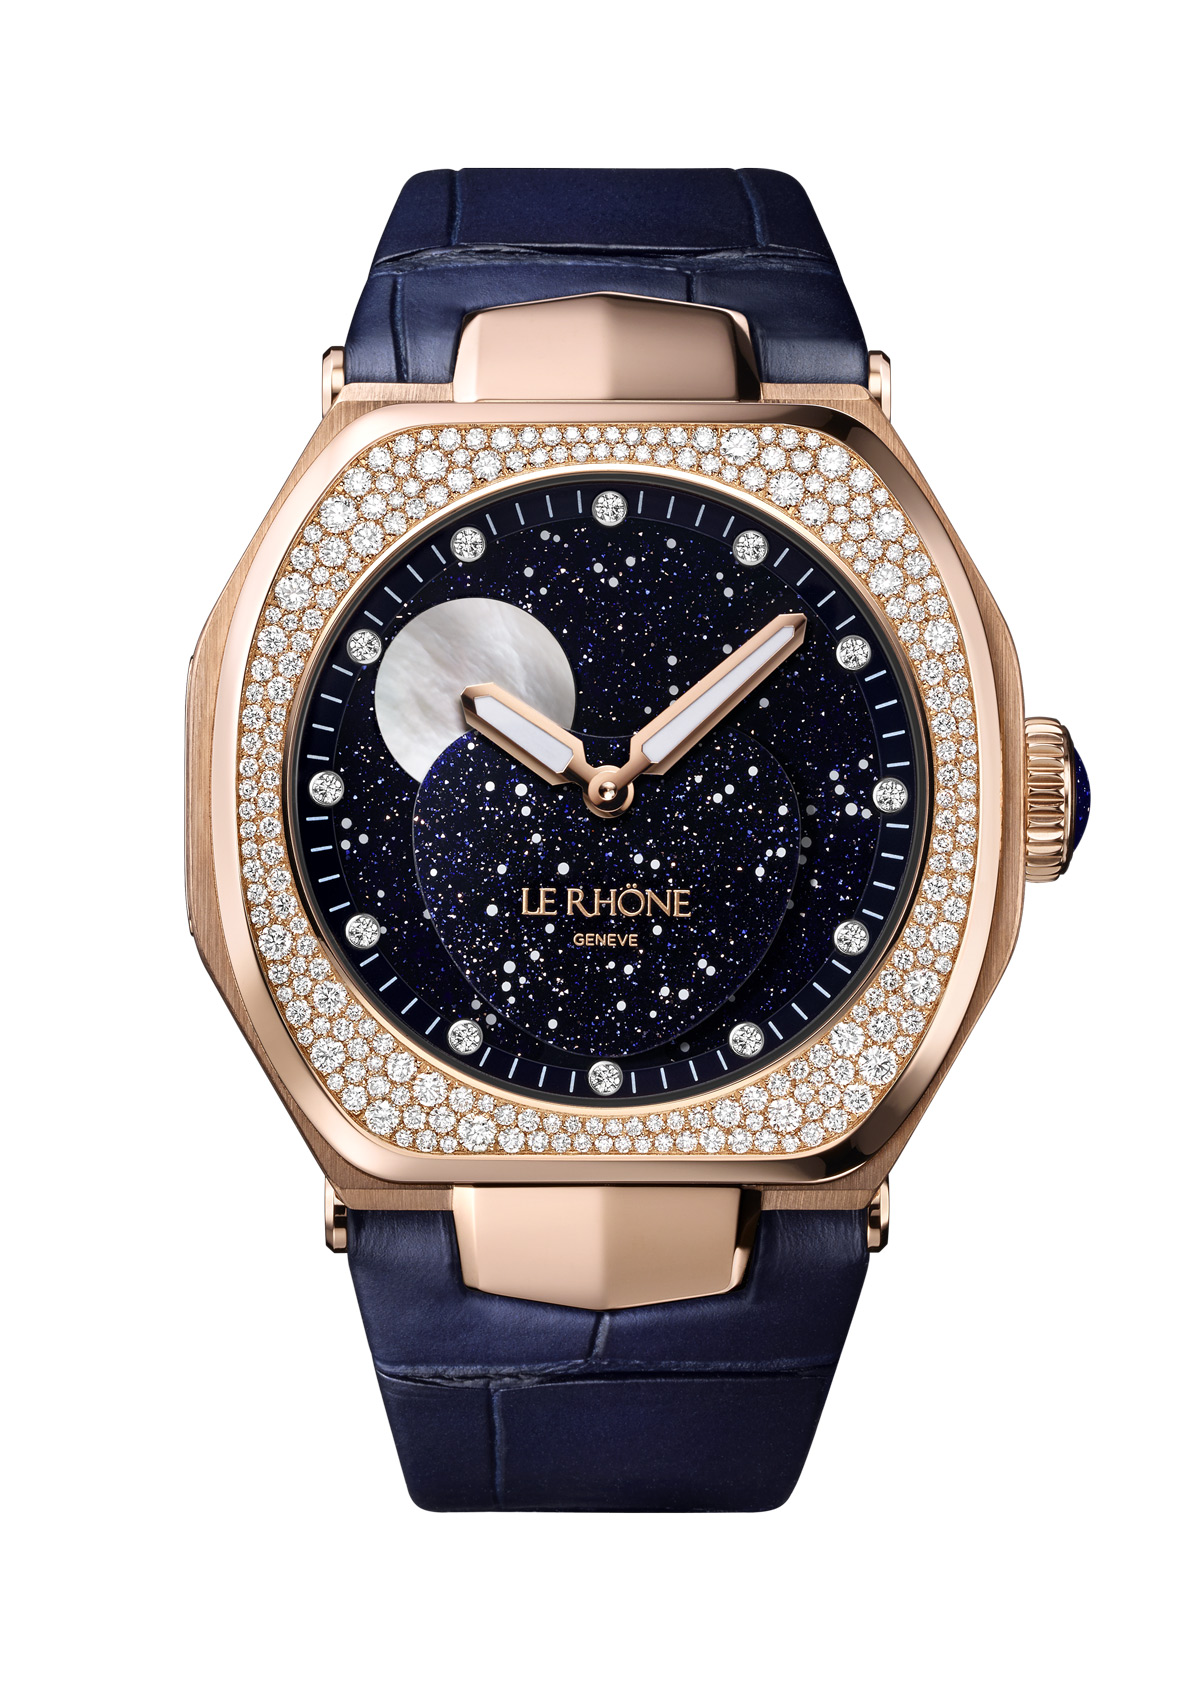 moon-37-le-rhone-watch-H5PG251-1-A51A